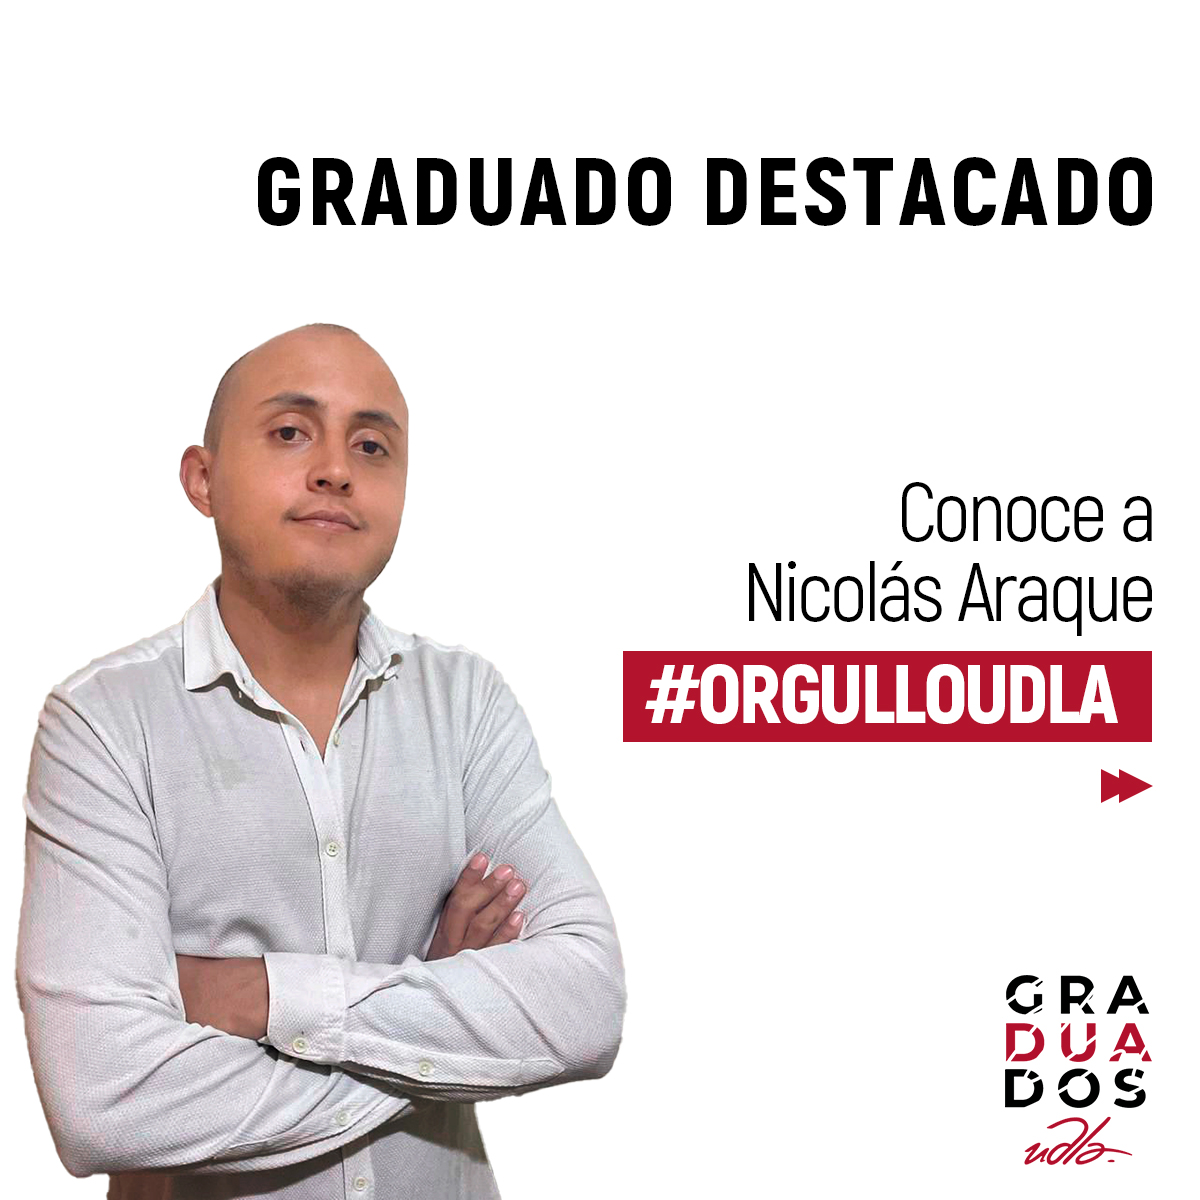 UDLA_Graduados_Destacados_Nicolás Araque_1